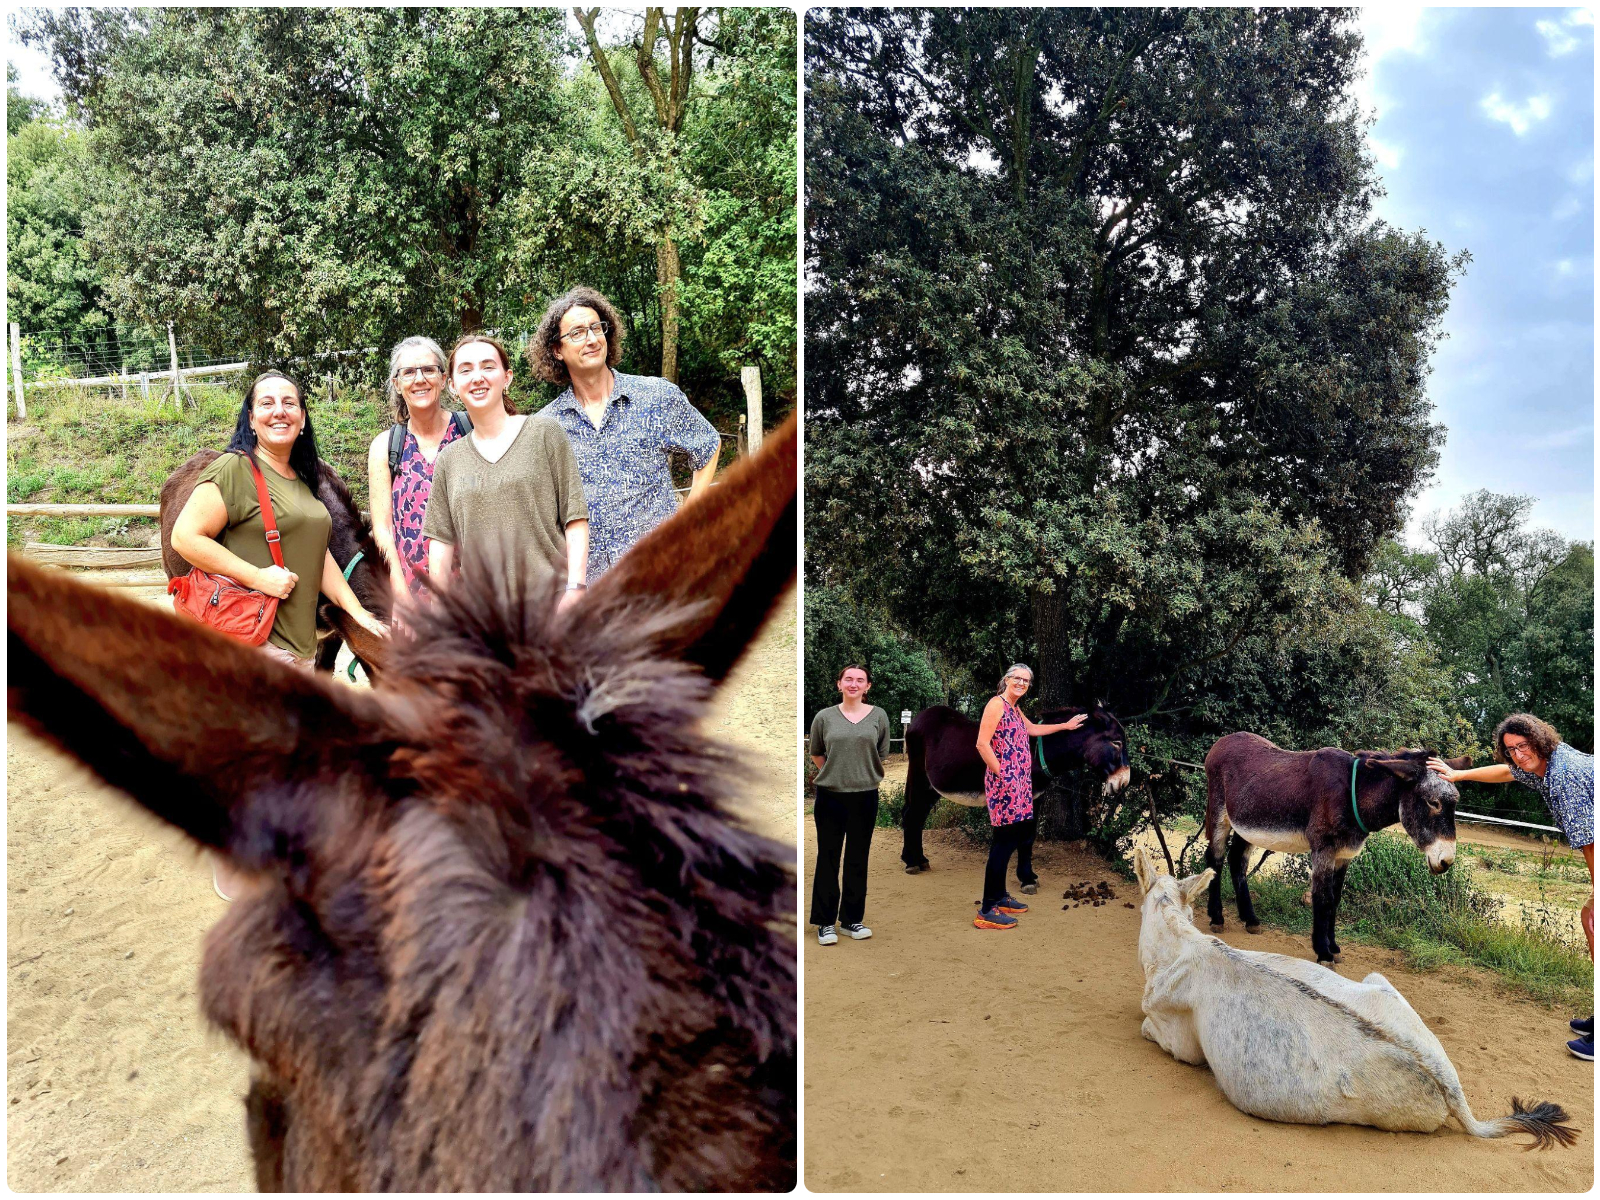 Megan donkey reserve Rukimon in Dosrius, Barcelona